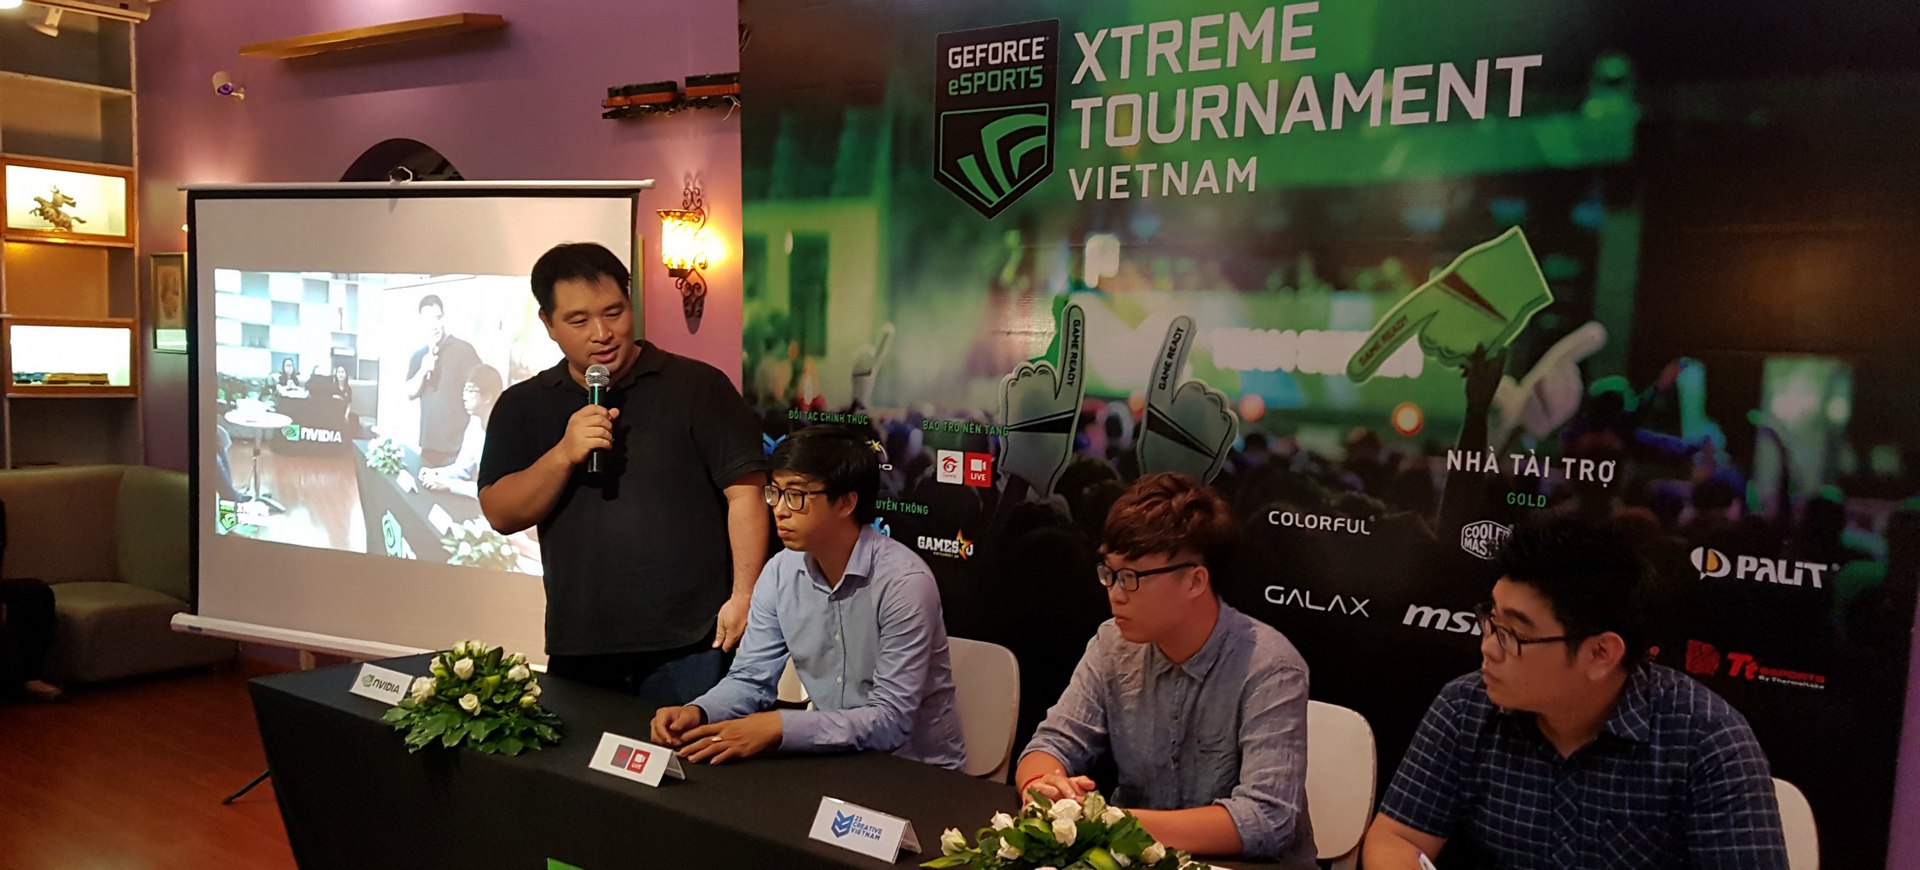 Nvidia công bố giải đấu GeForce eSports Xtreme Tournament